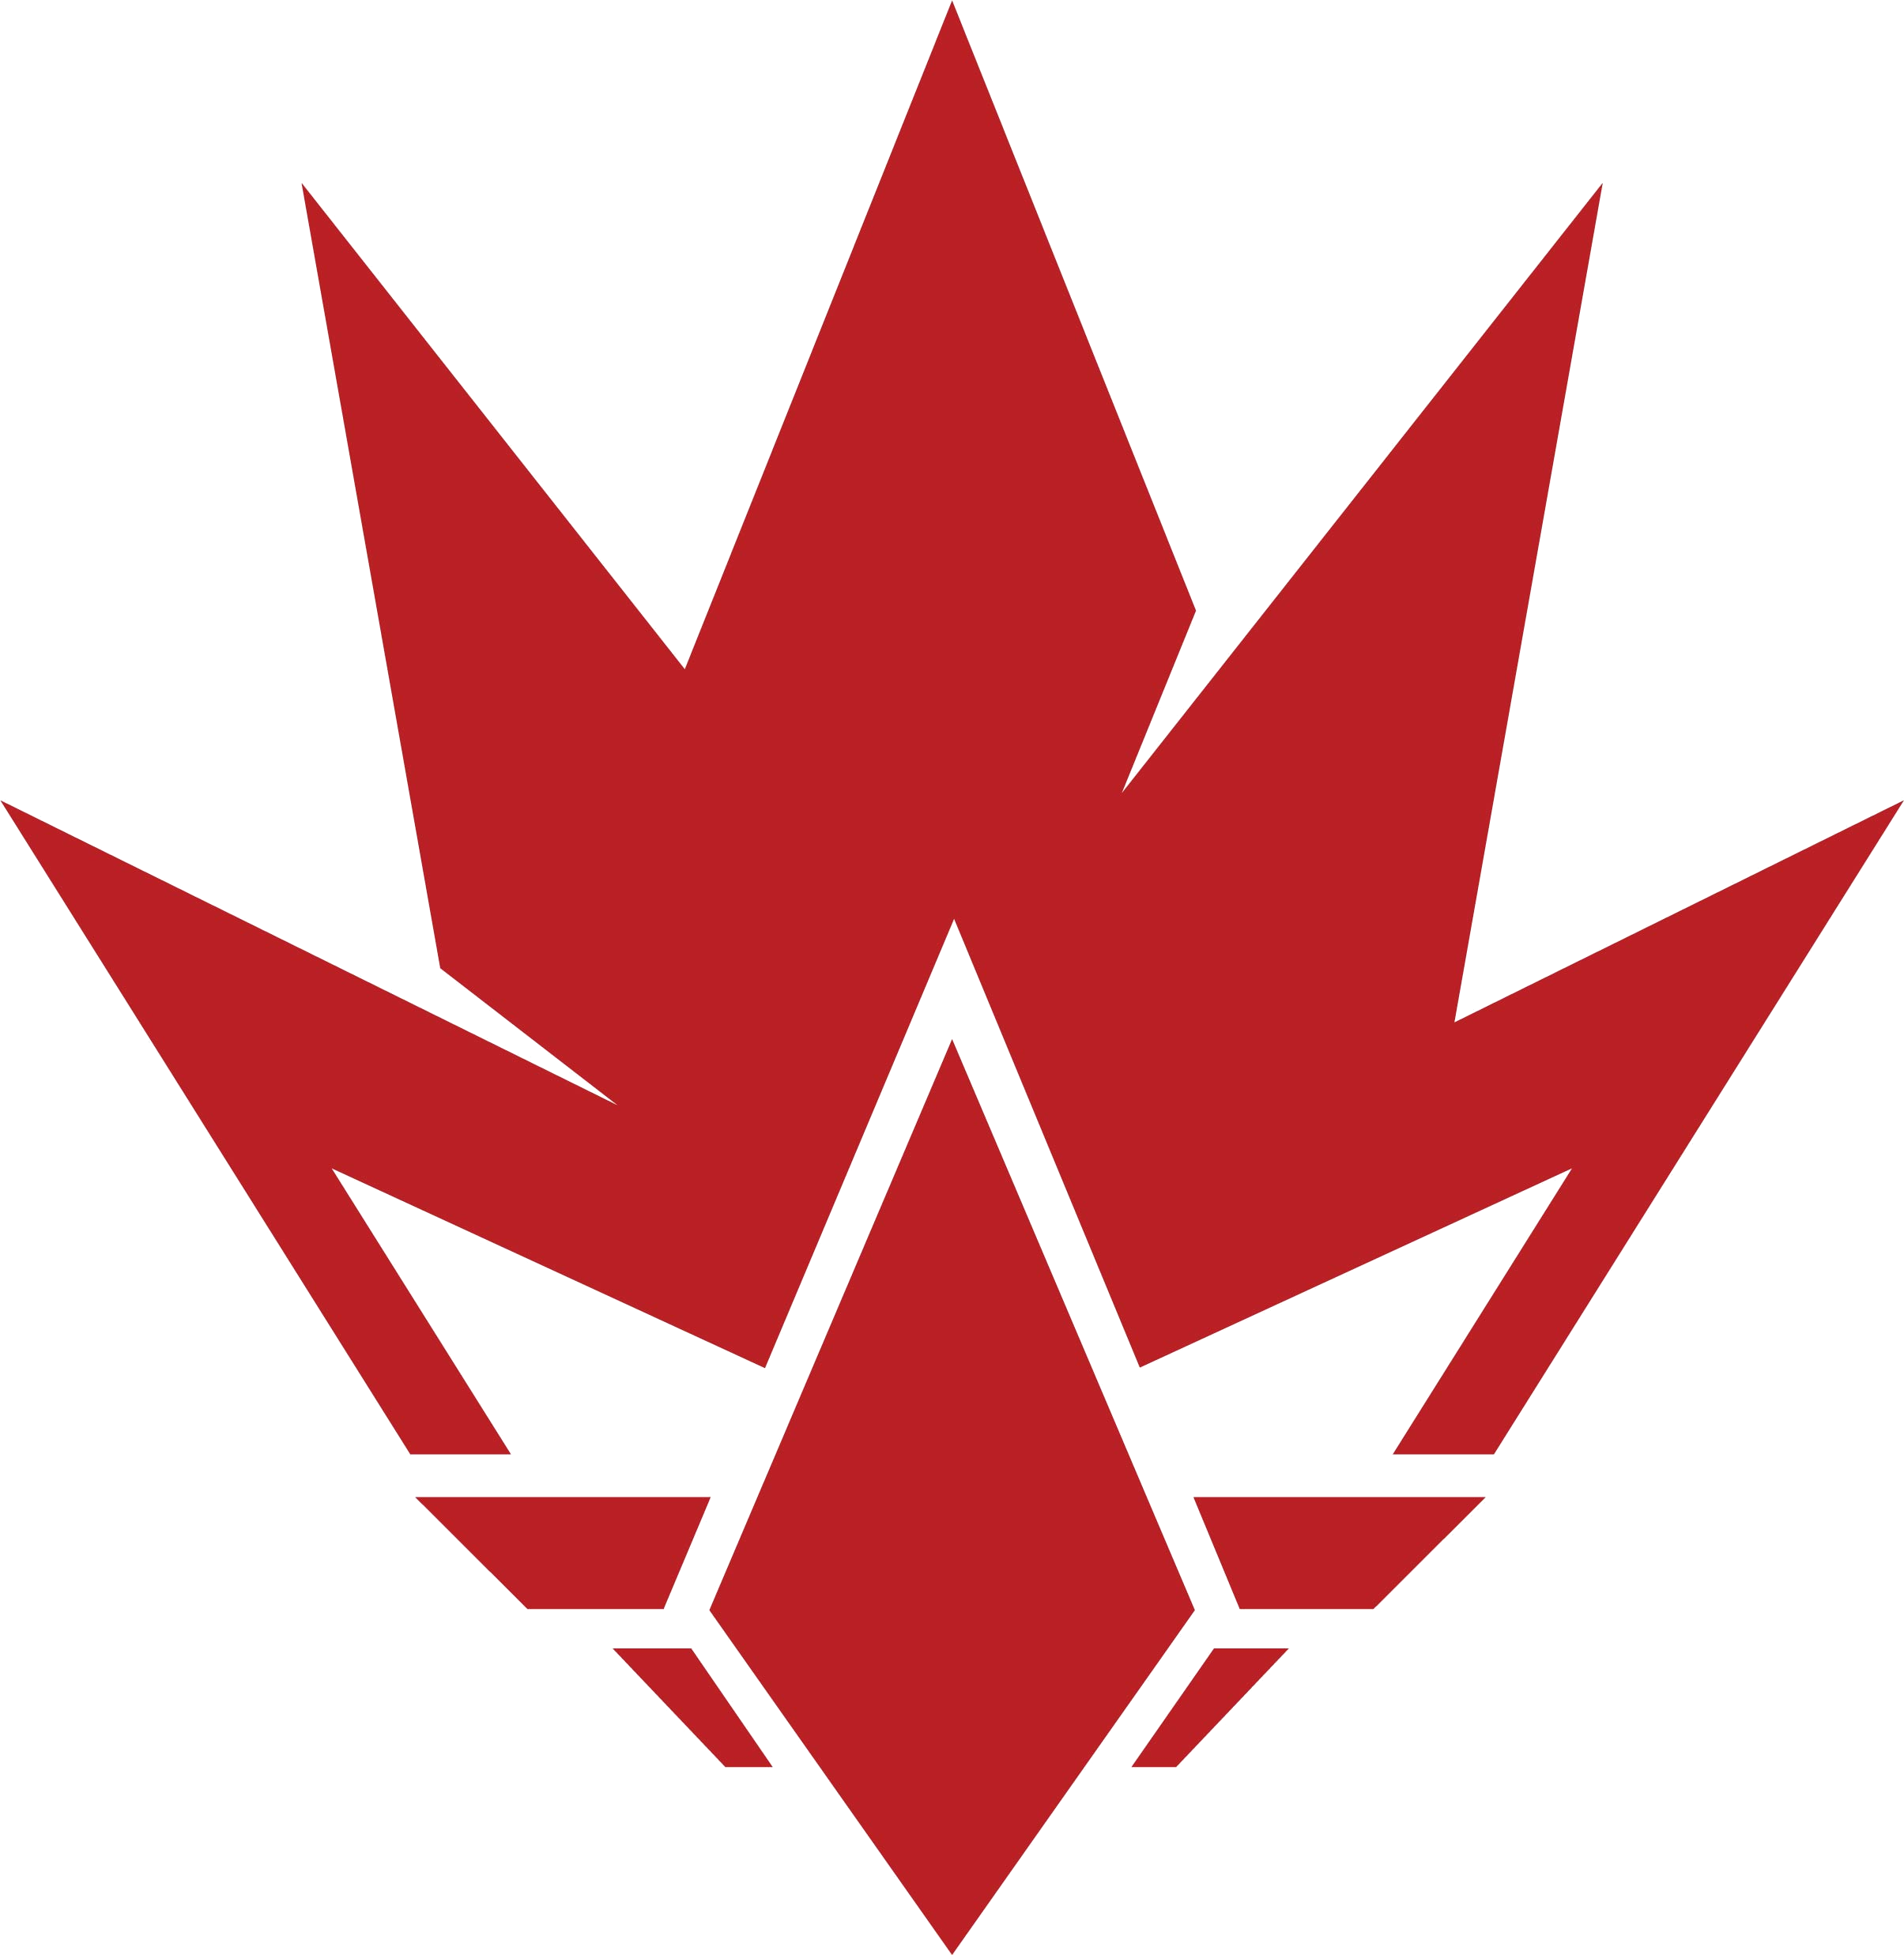 HEET's logo